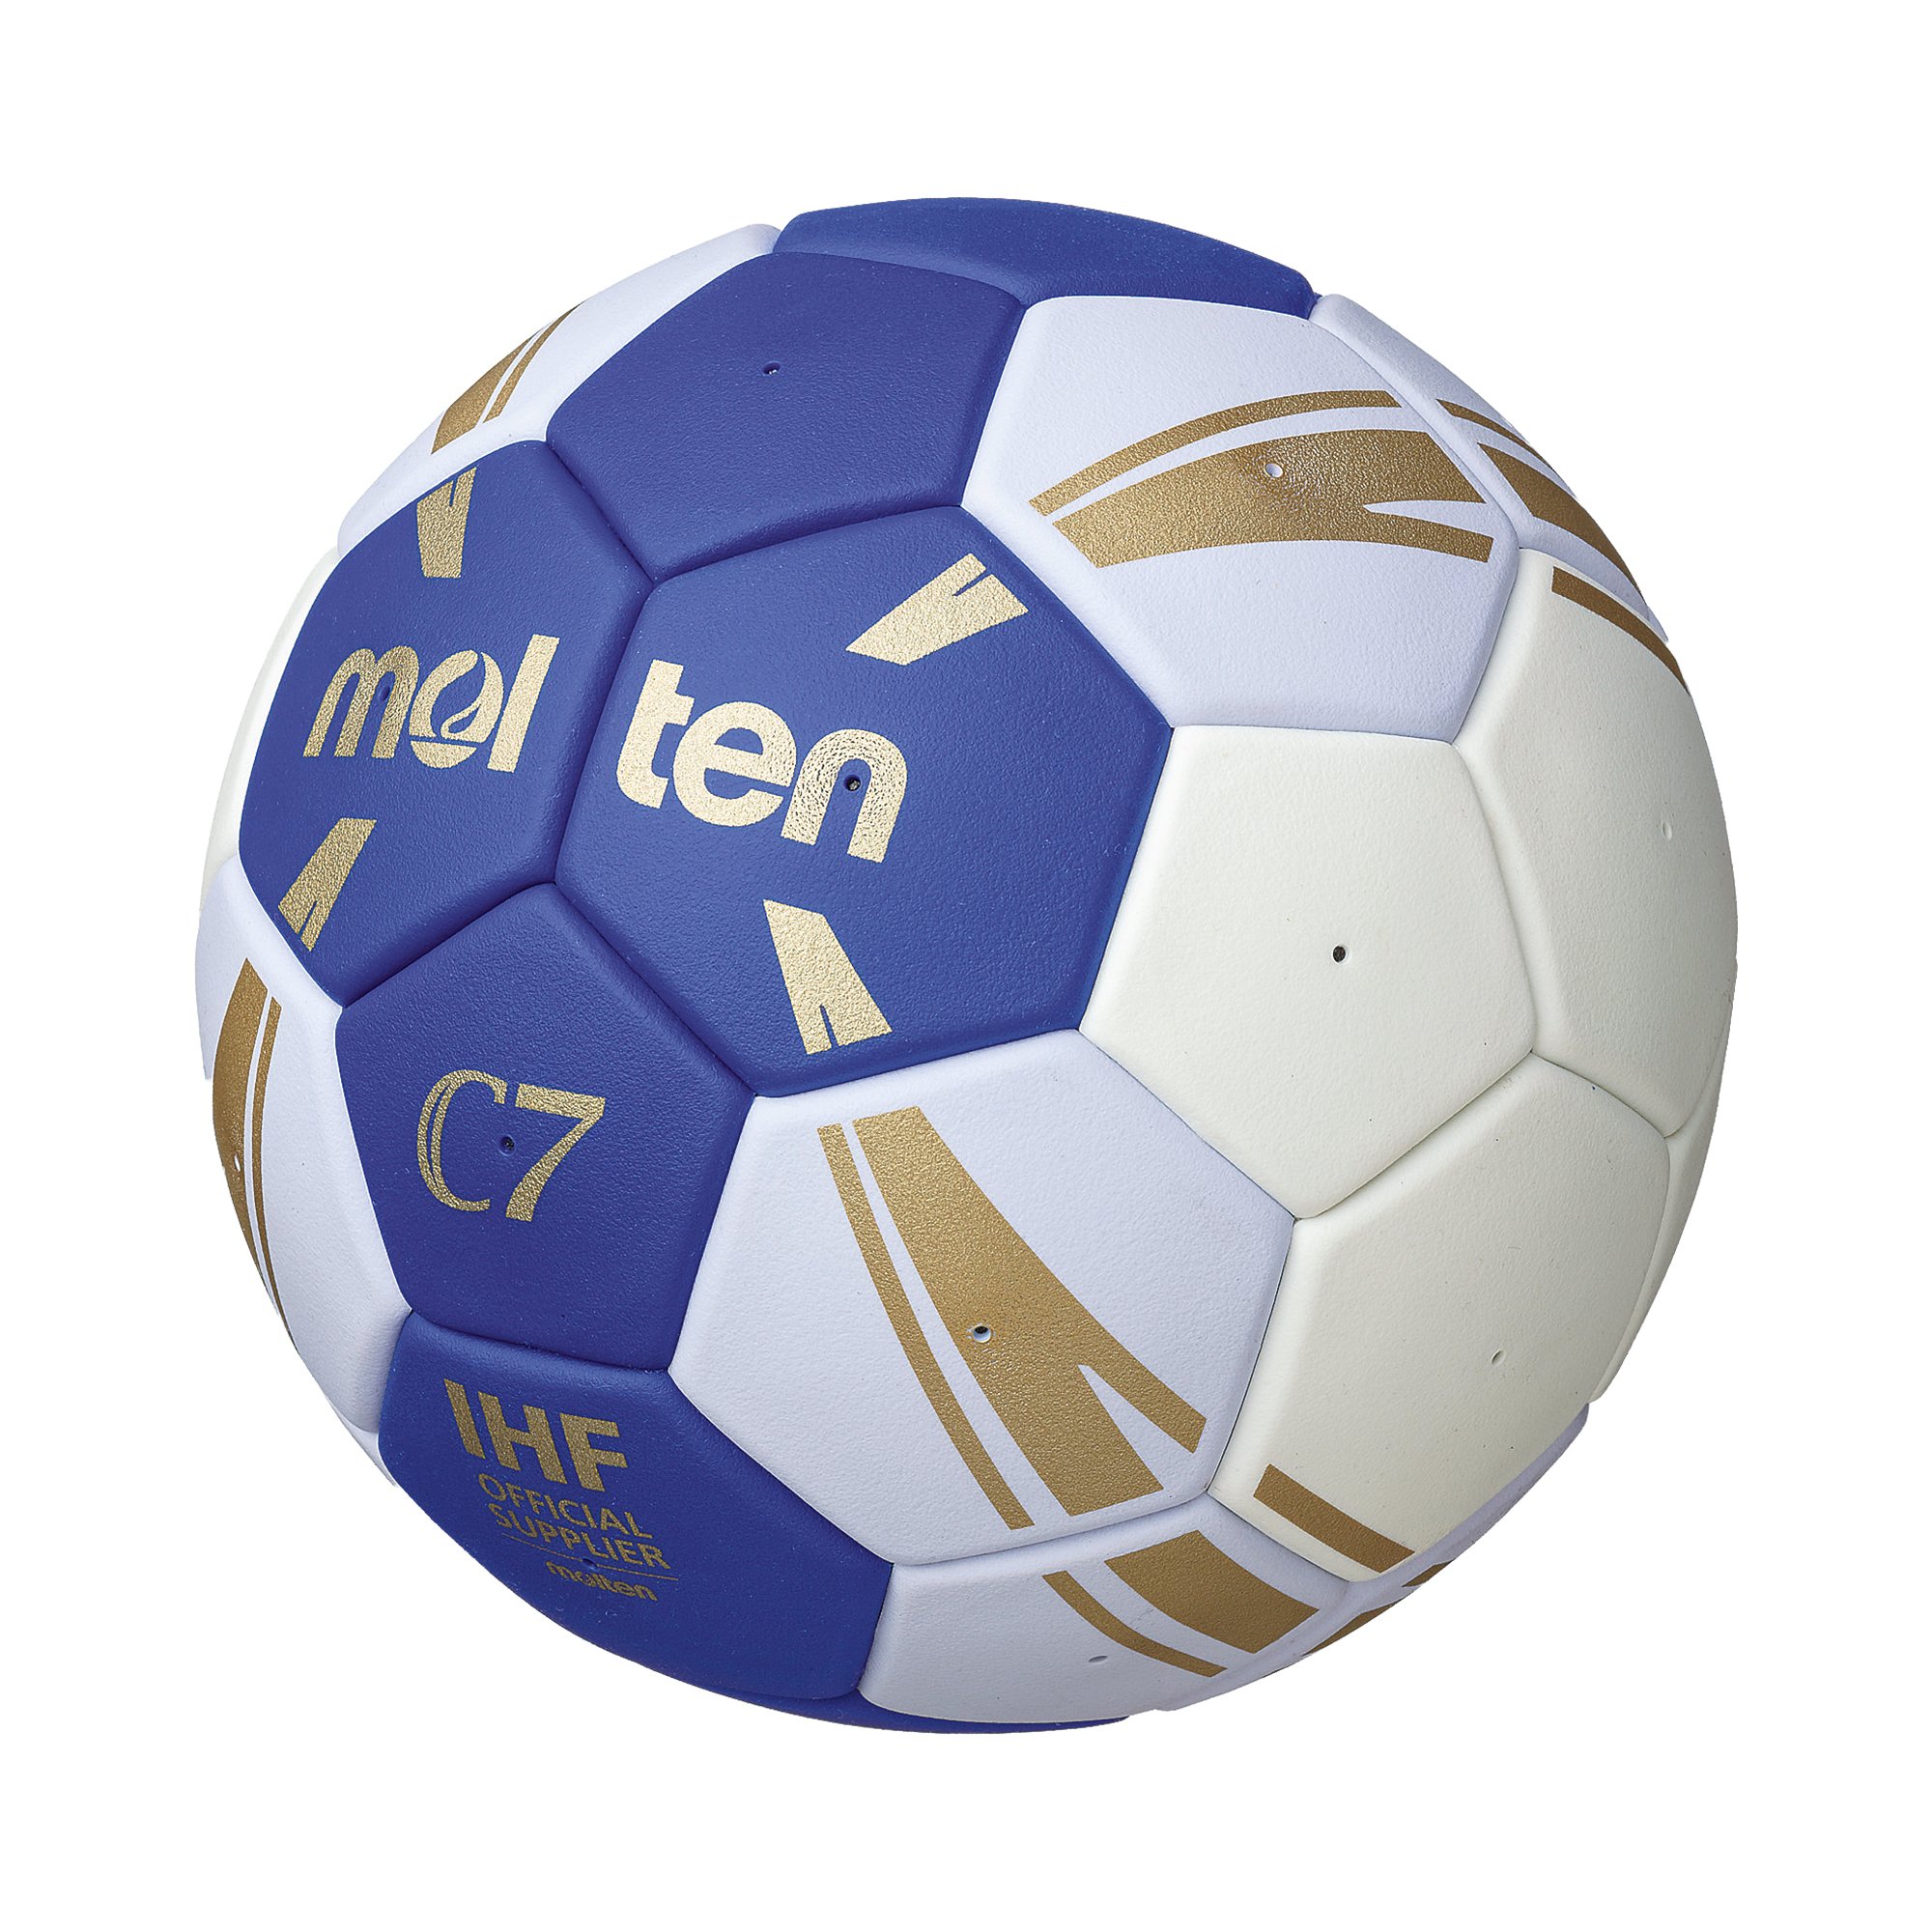 Molten C7 Handball HC3500